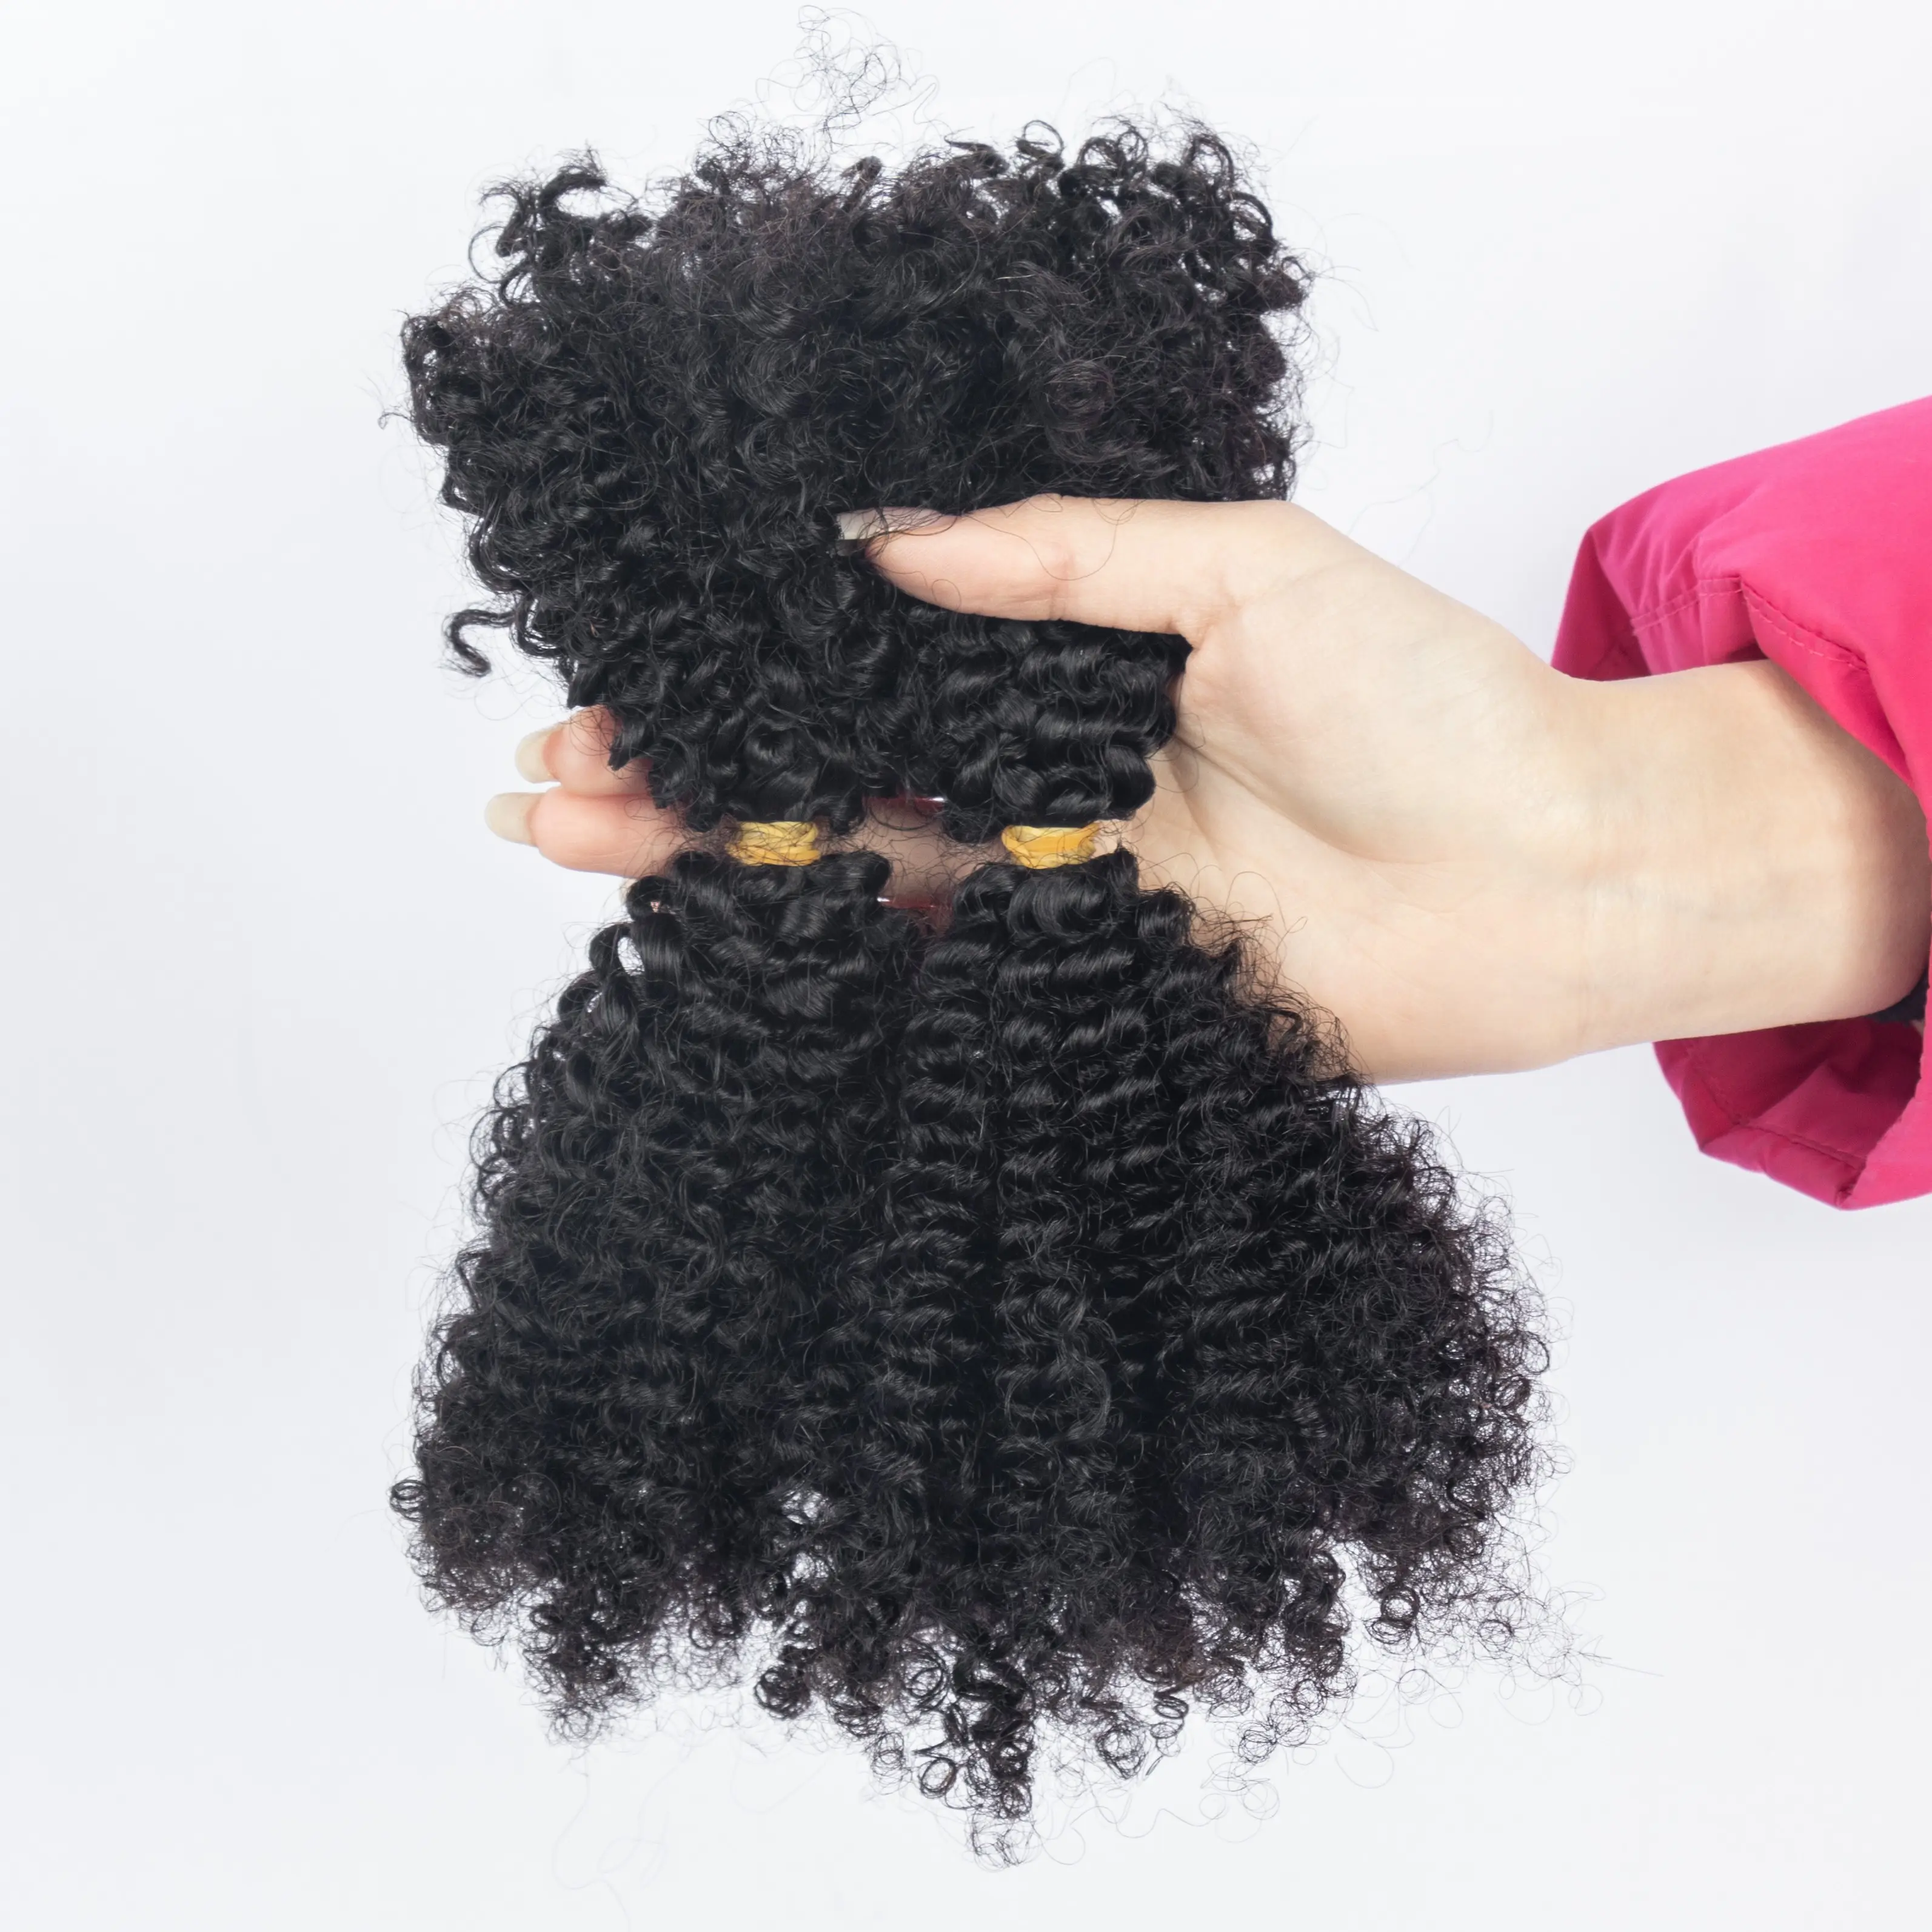 Pelo afro brasileño barato a granel para trenzas 4B4C extensiones de cabello rizado cabello trenzado humano